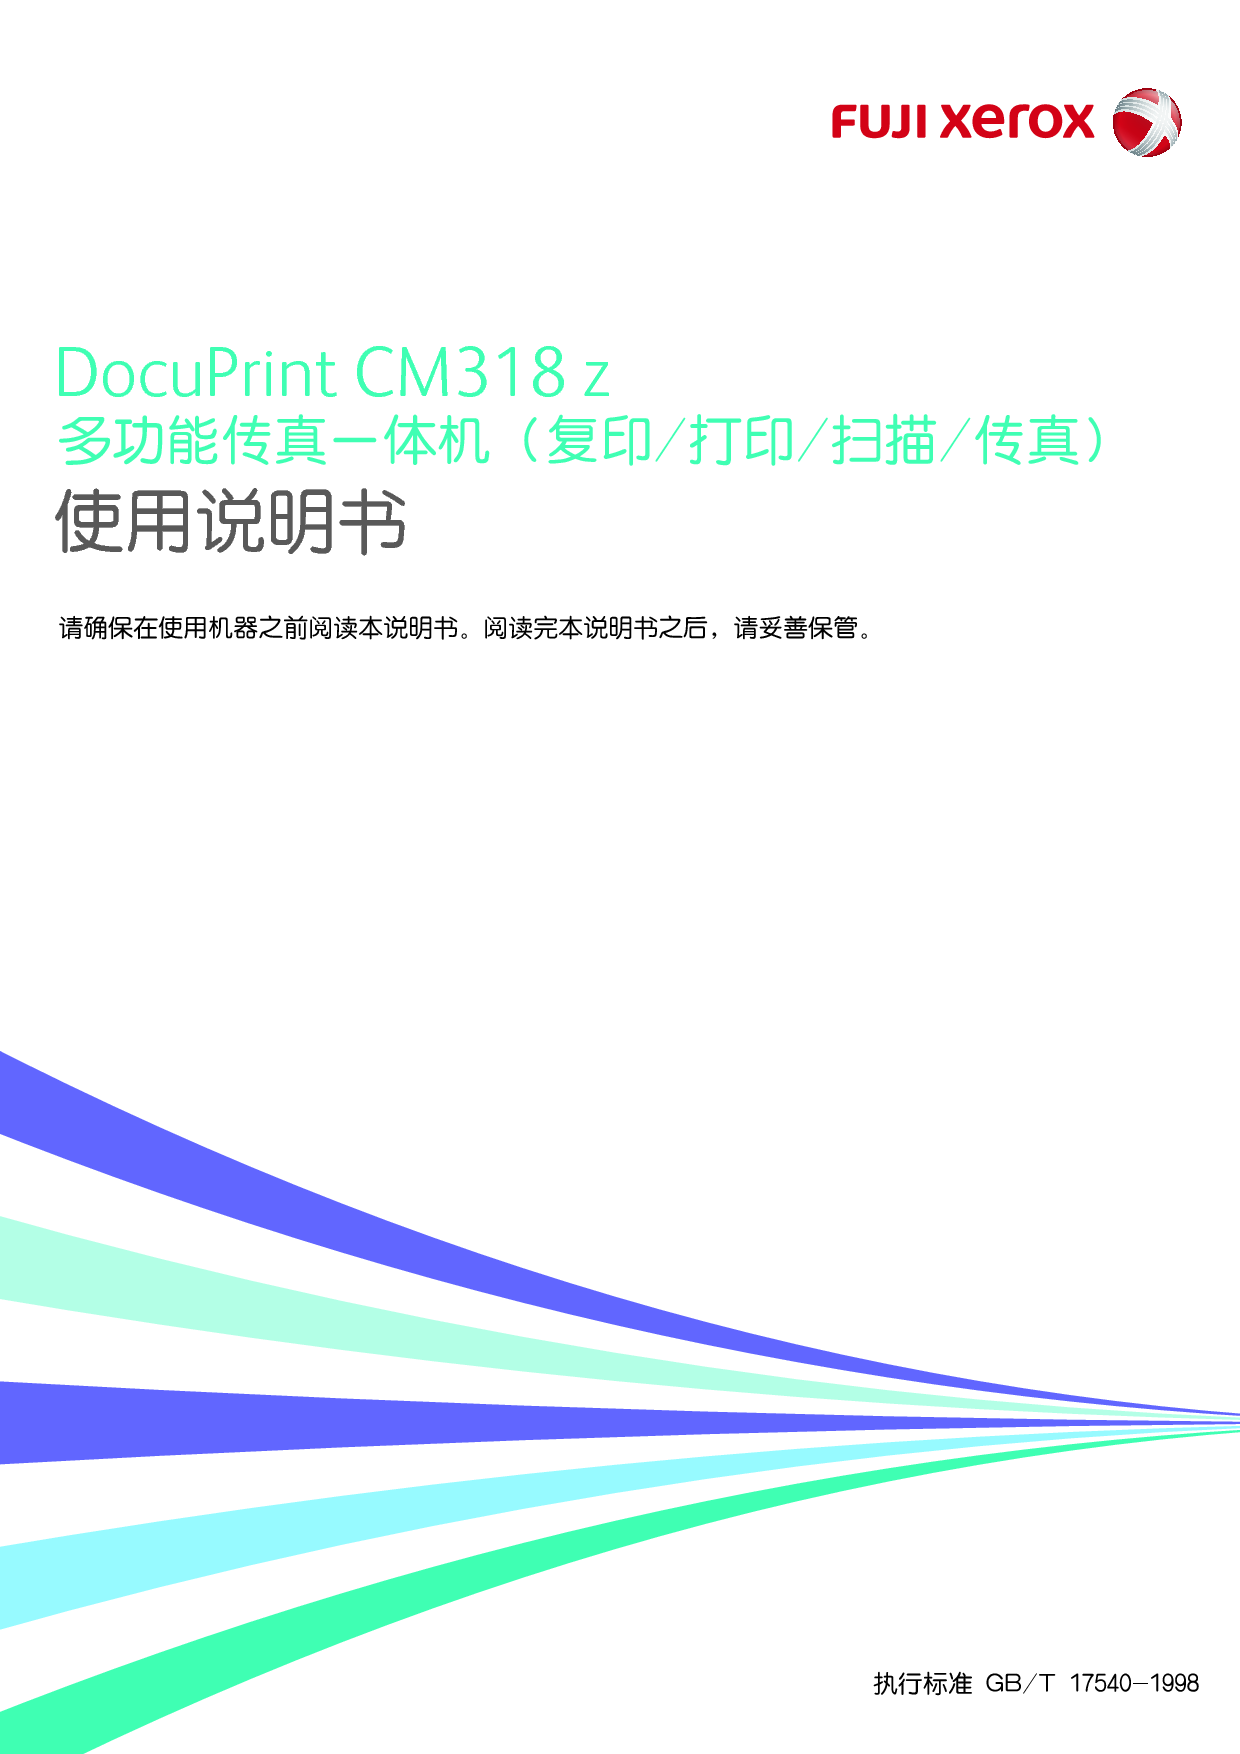 富士施乐 Fuji Xerox DocuPrint CM318 z 使用说明书 封面